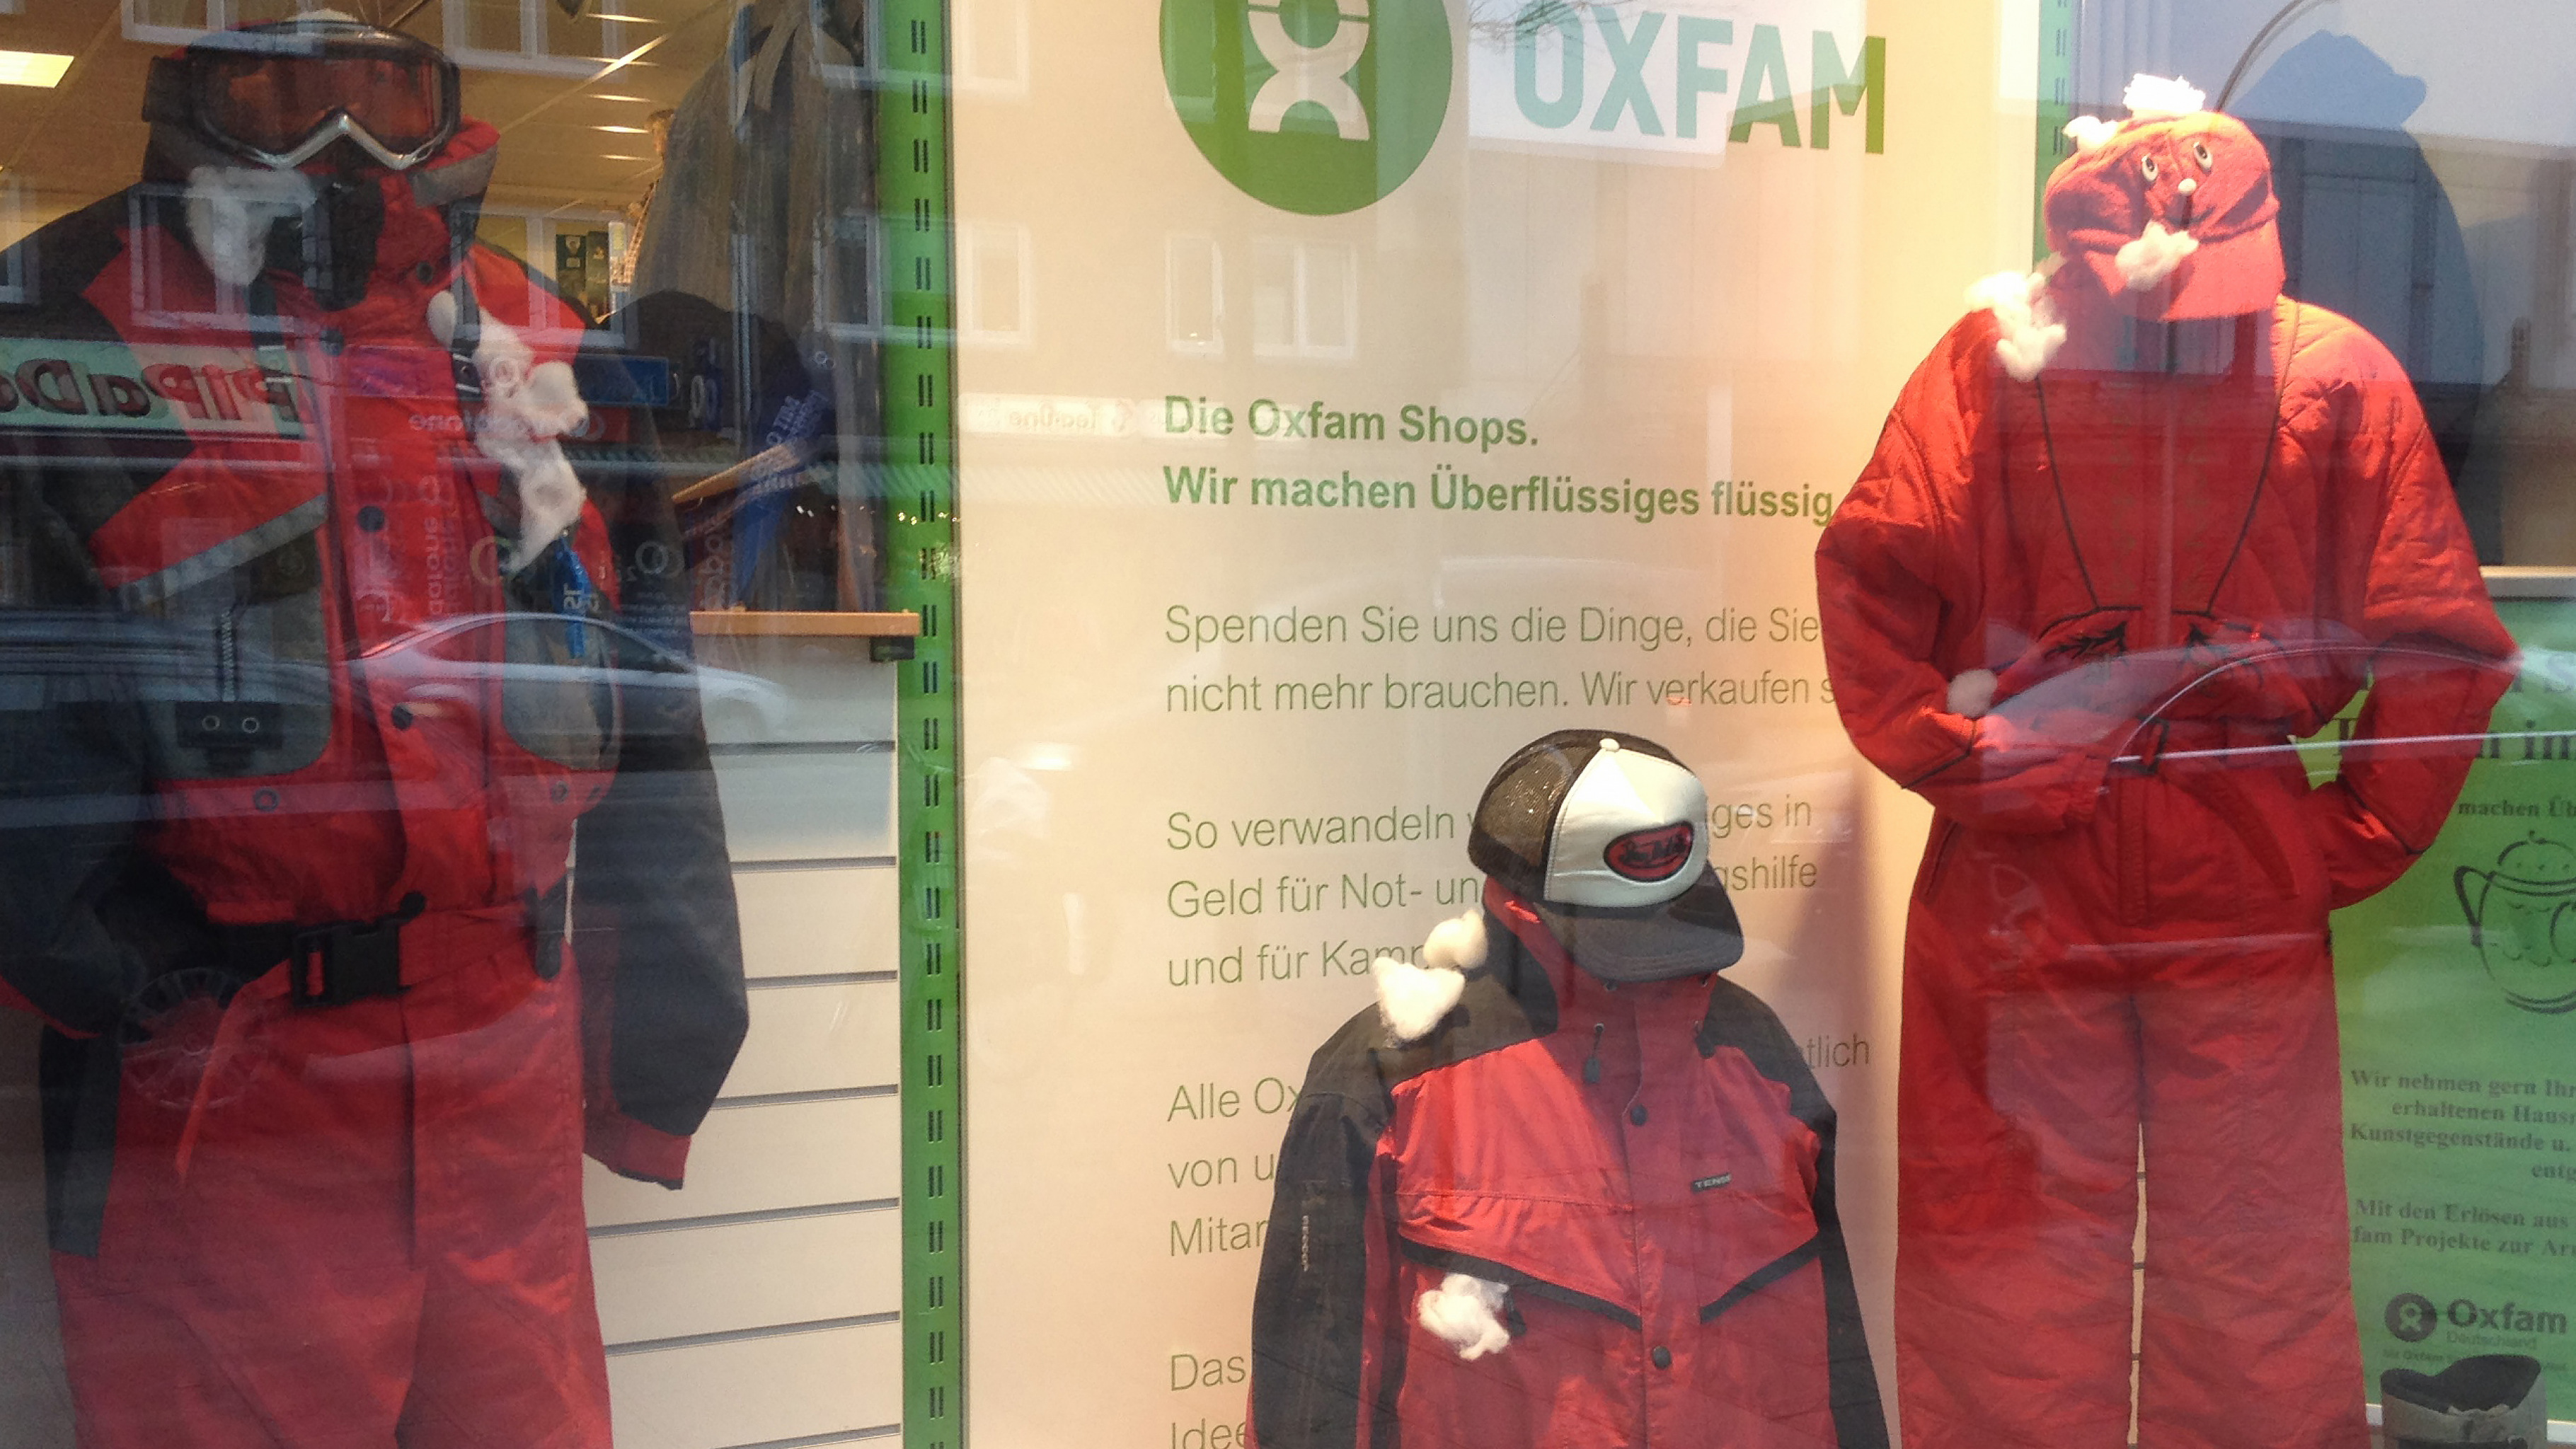 Wintersport- und Ski-Kleidung im Schaufenster eines Oxfam Shops